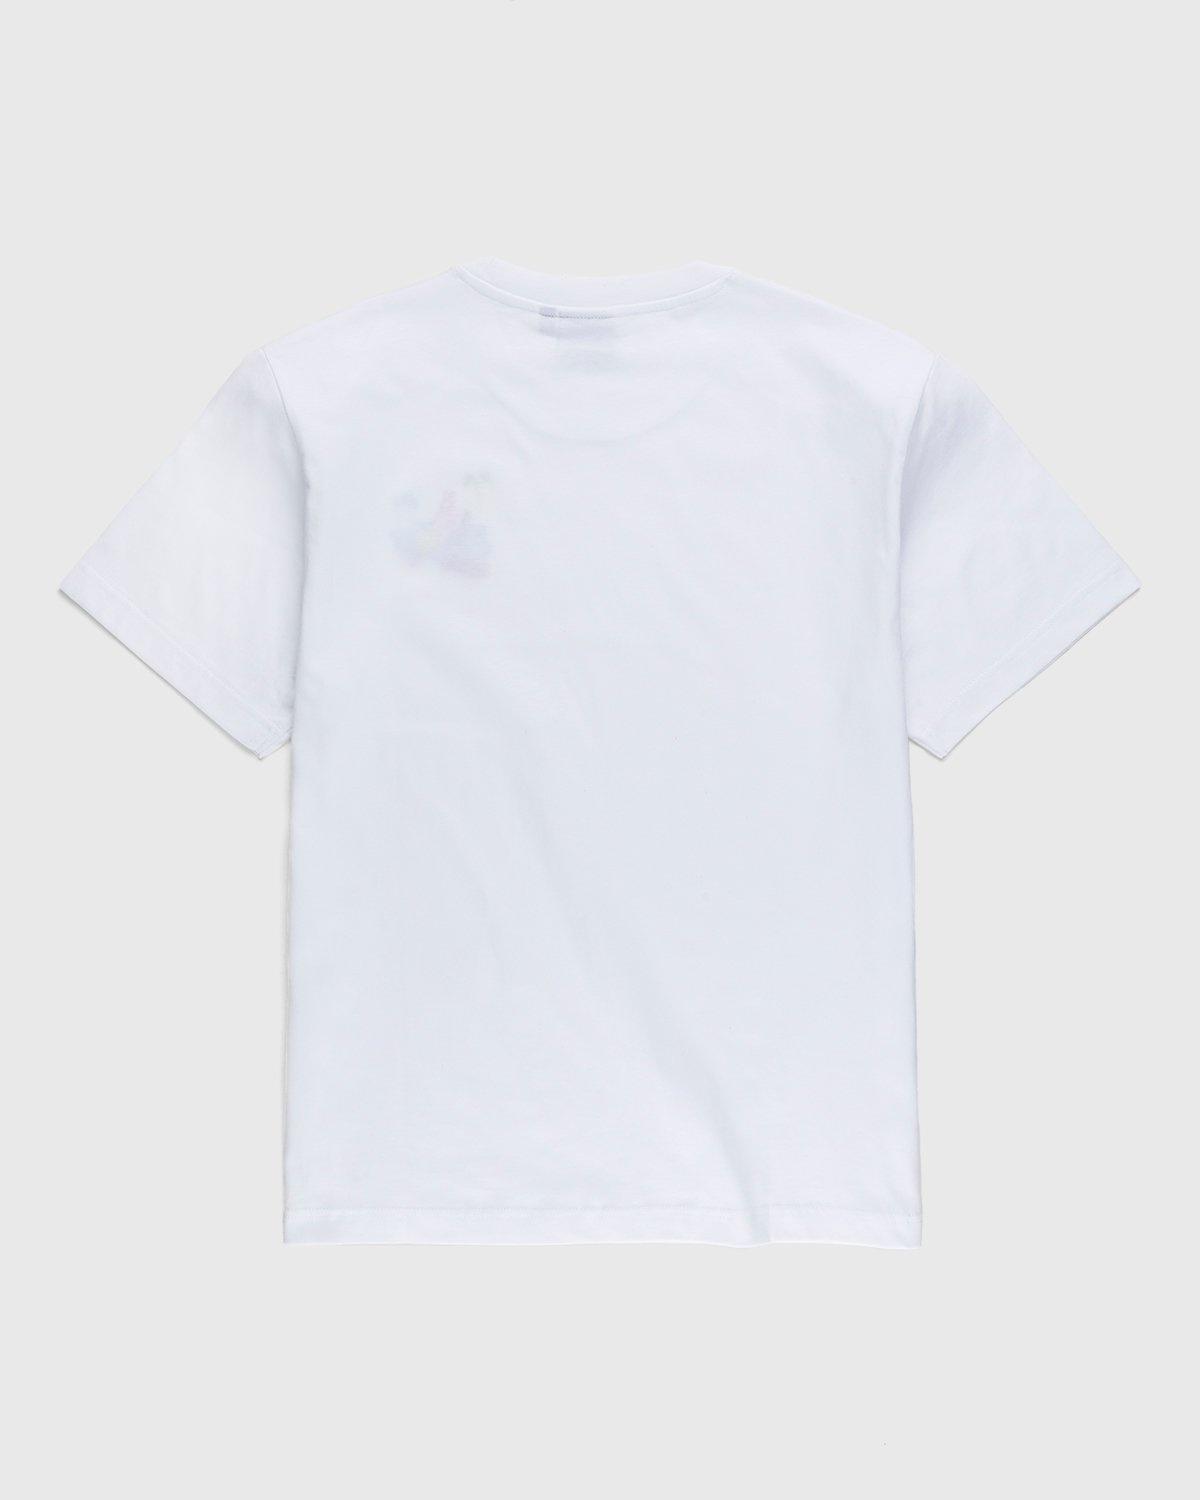 Carne Bollente – Baise sur la Plage T-Shirt White - T-Shirts - White - Image 2